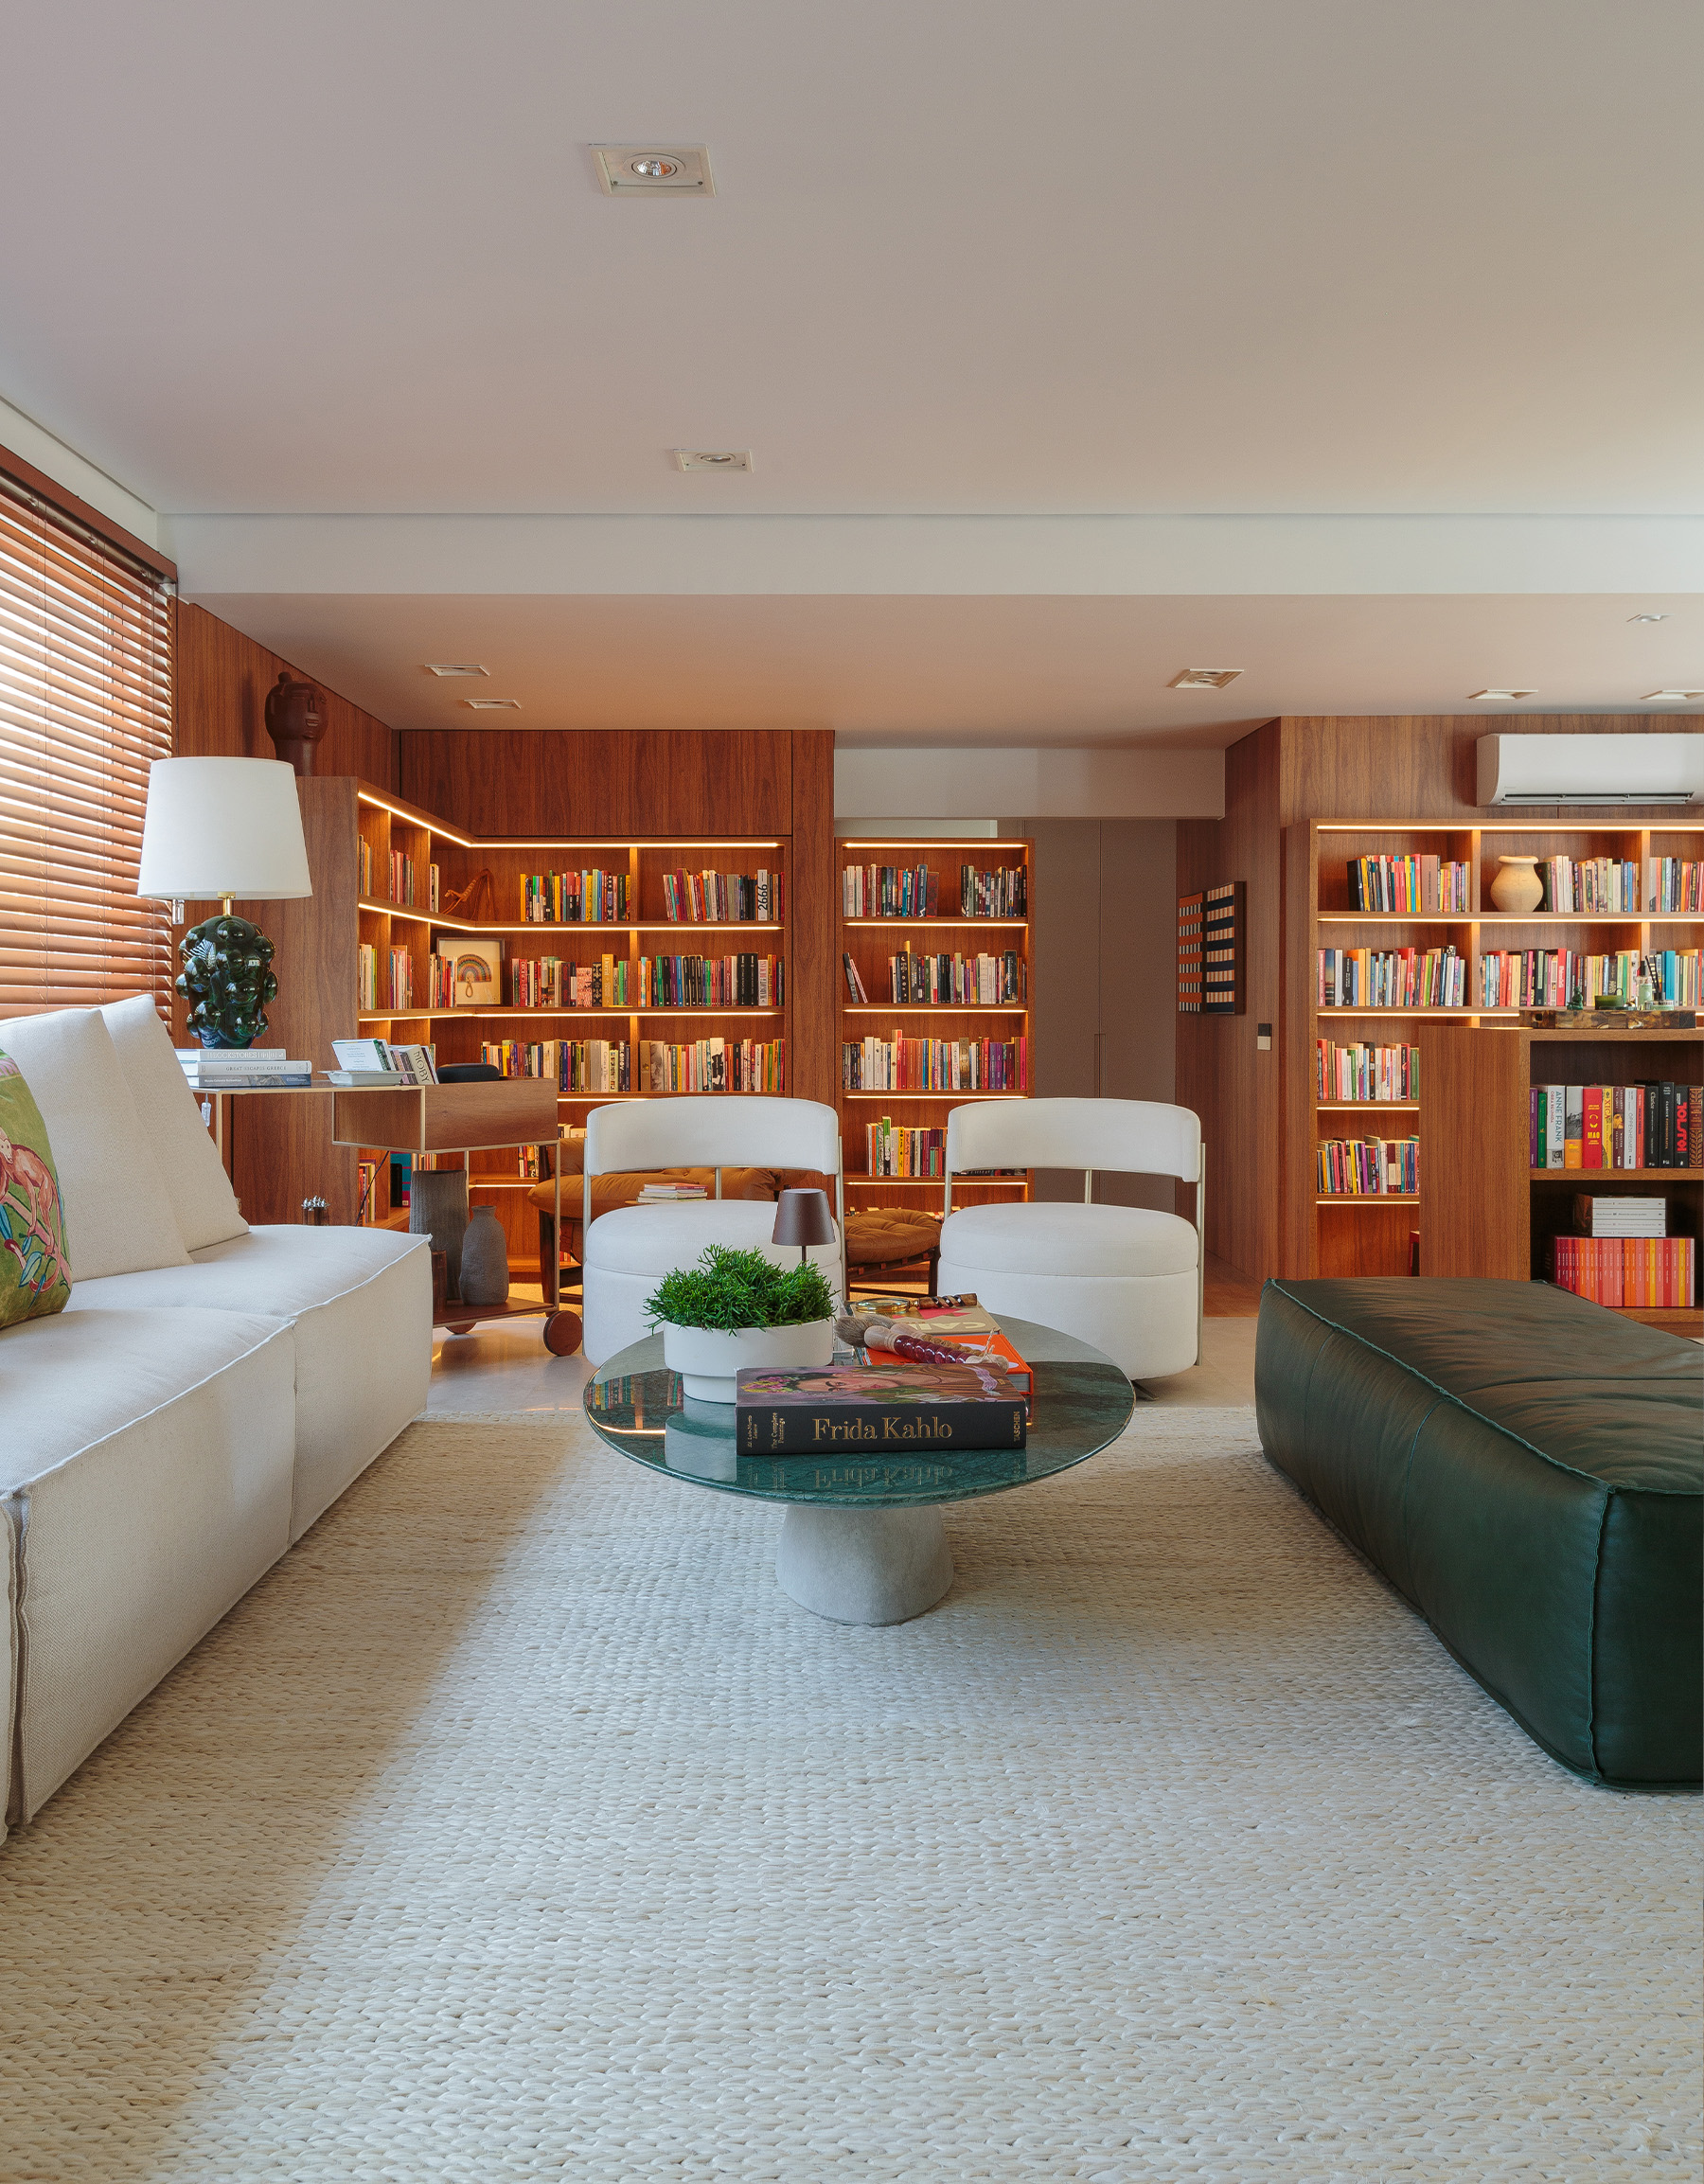 Apartamento integrado com sala aberta e estante de madeira com muitos livros